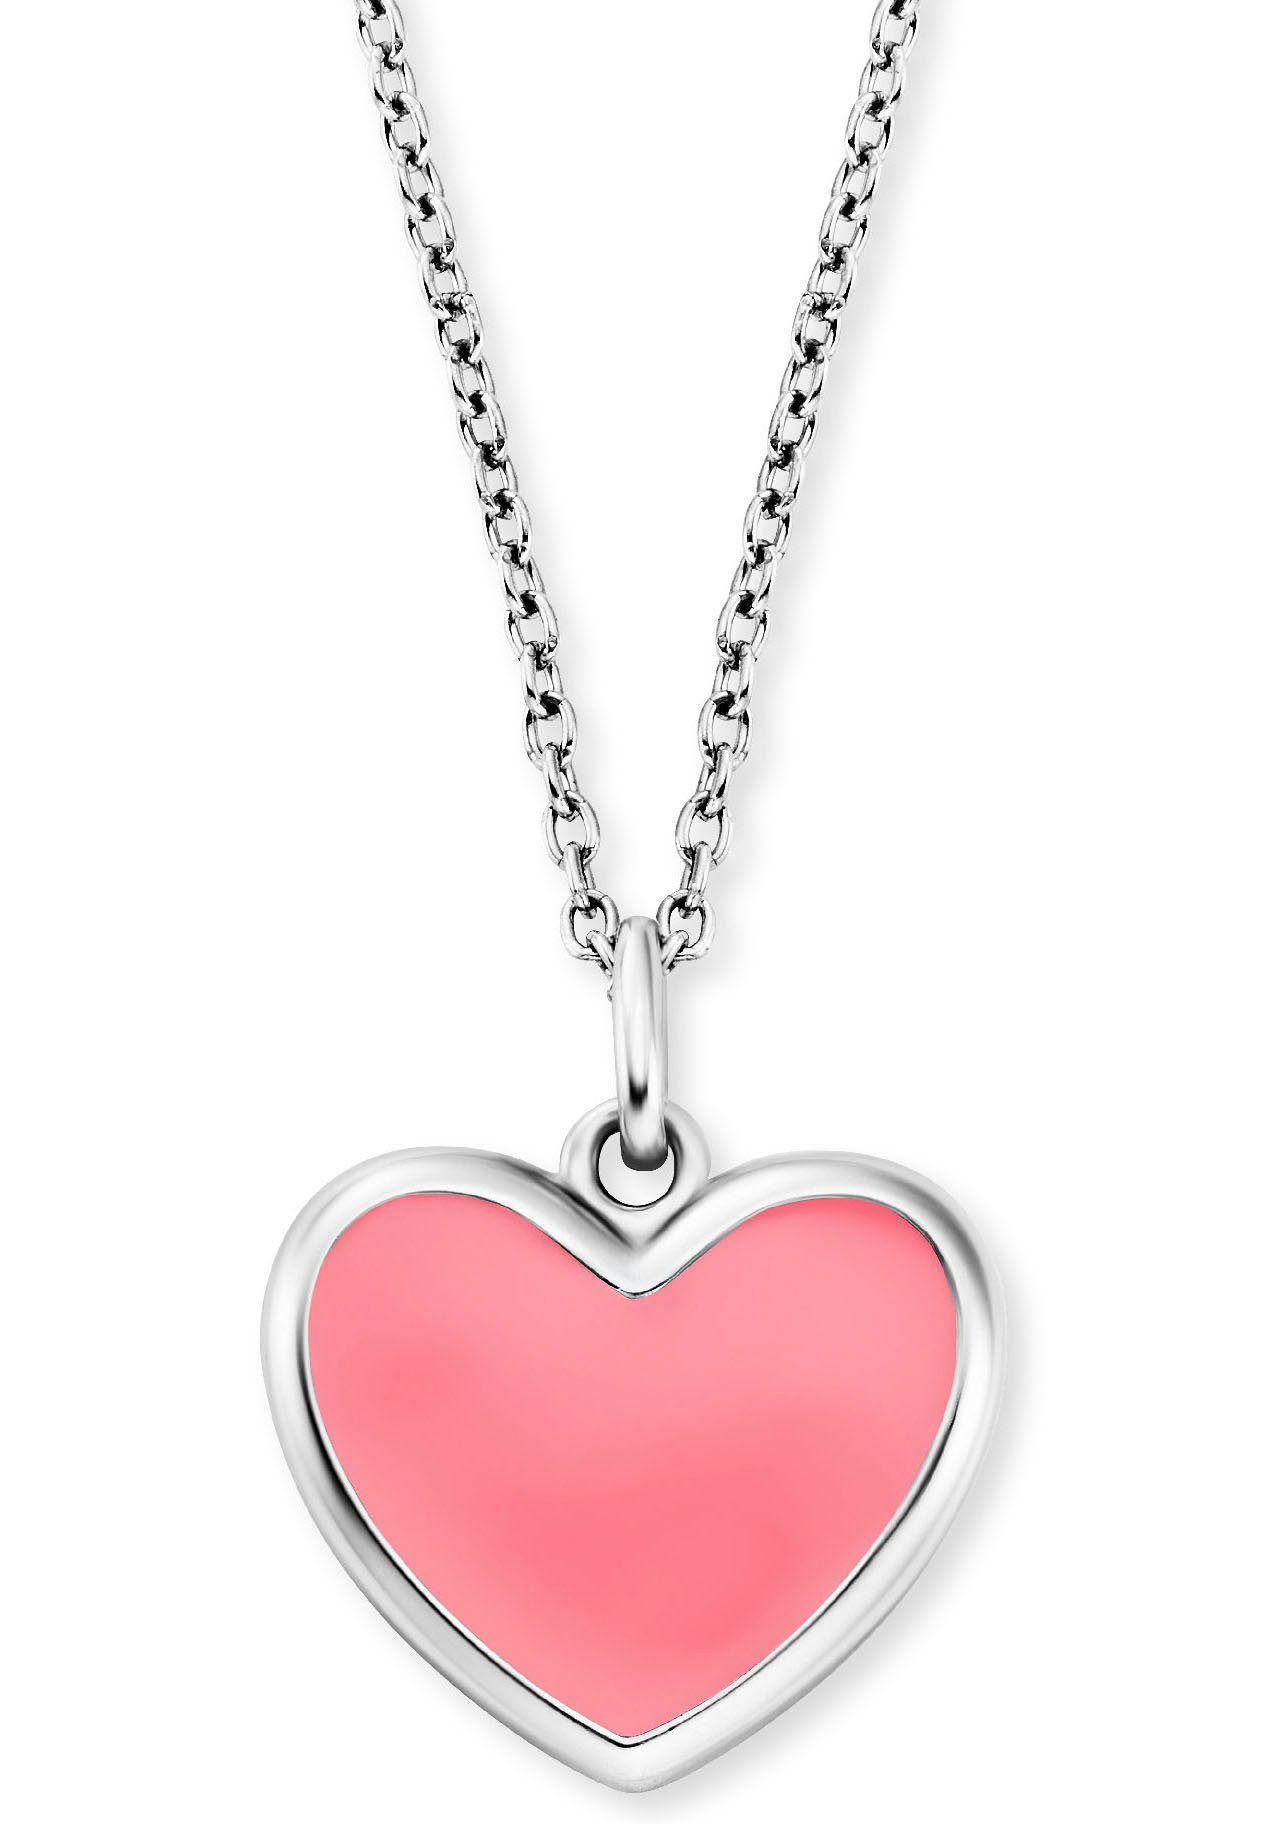 Schmuck Kette Little Heart, HEN-HEART-06, HEN-HEART-13 Geschenk, Anhänger mit Herz, silberfarben-rosa Herzengel